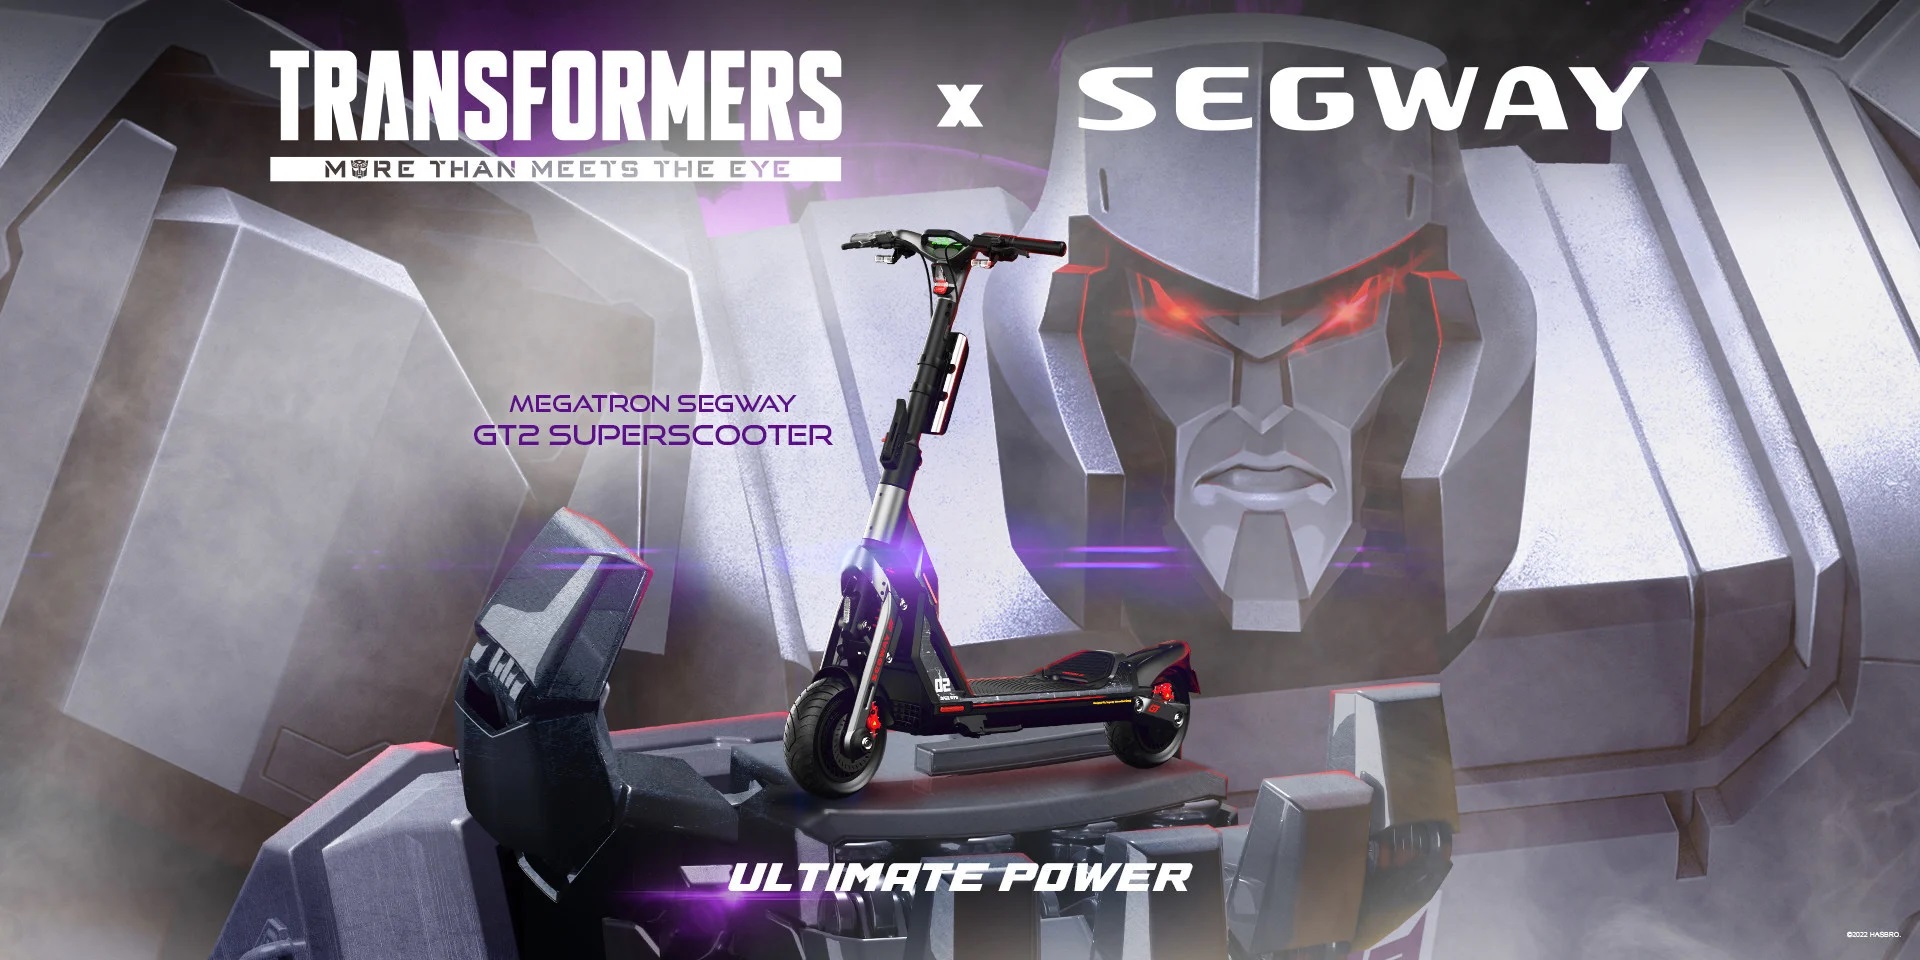 Segway-Ninebot і Hasbro випустили обмежену серію картів та електросамокатів на честь Трансформерів